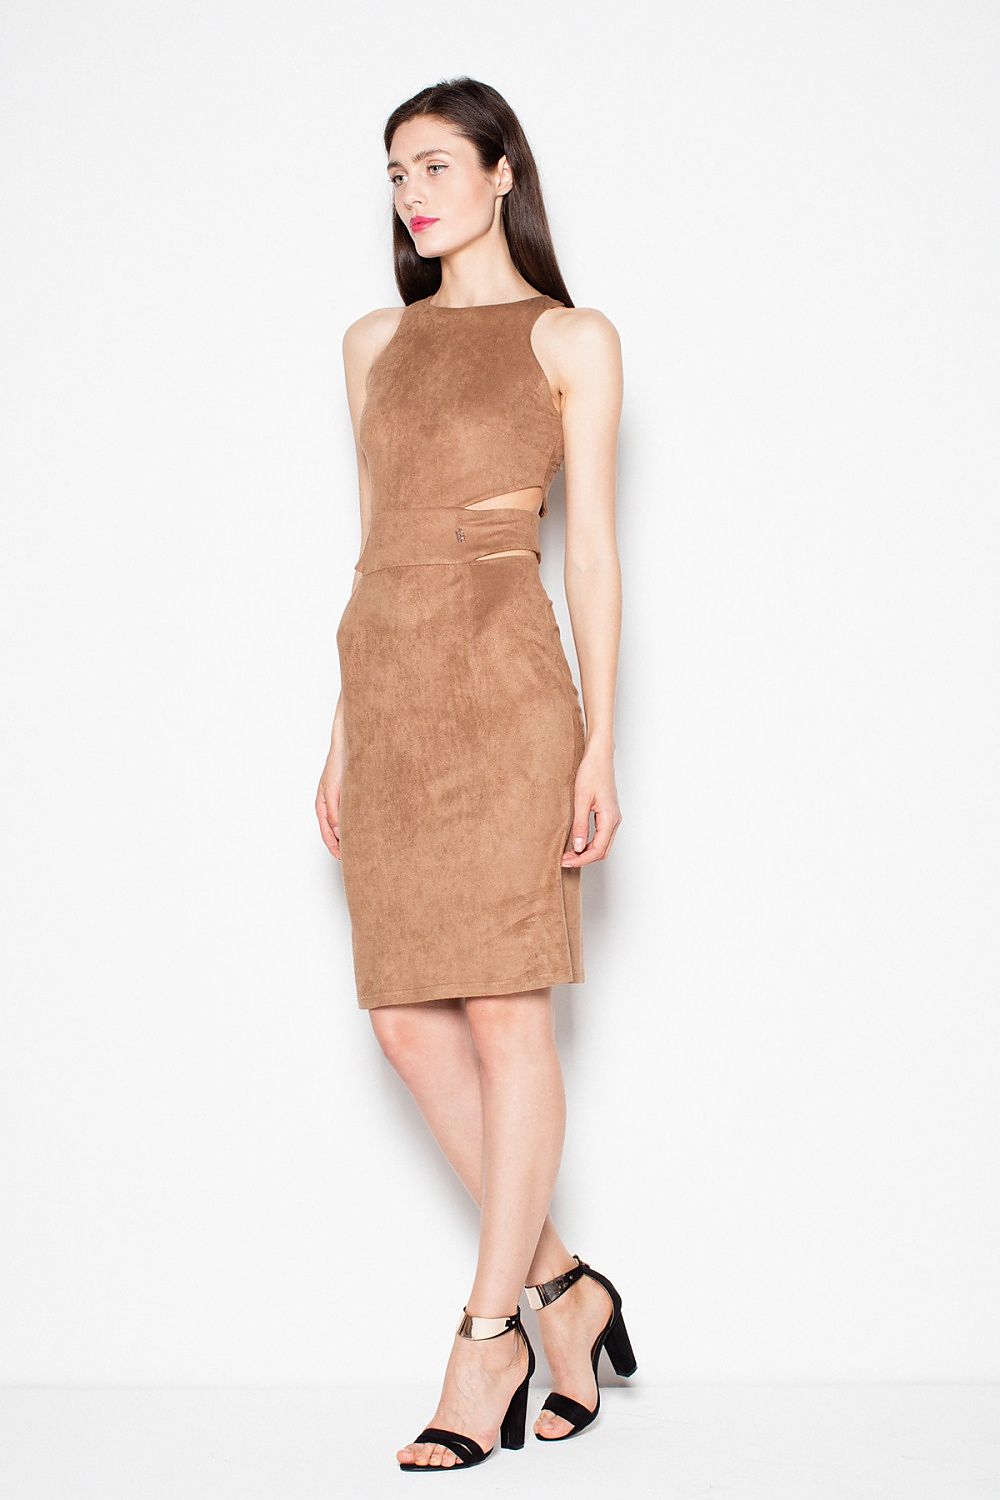 TEEK - Brown Waist Slit Evening Dress DRESS TEEK M   